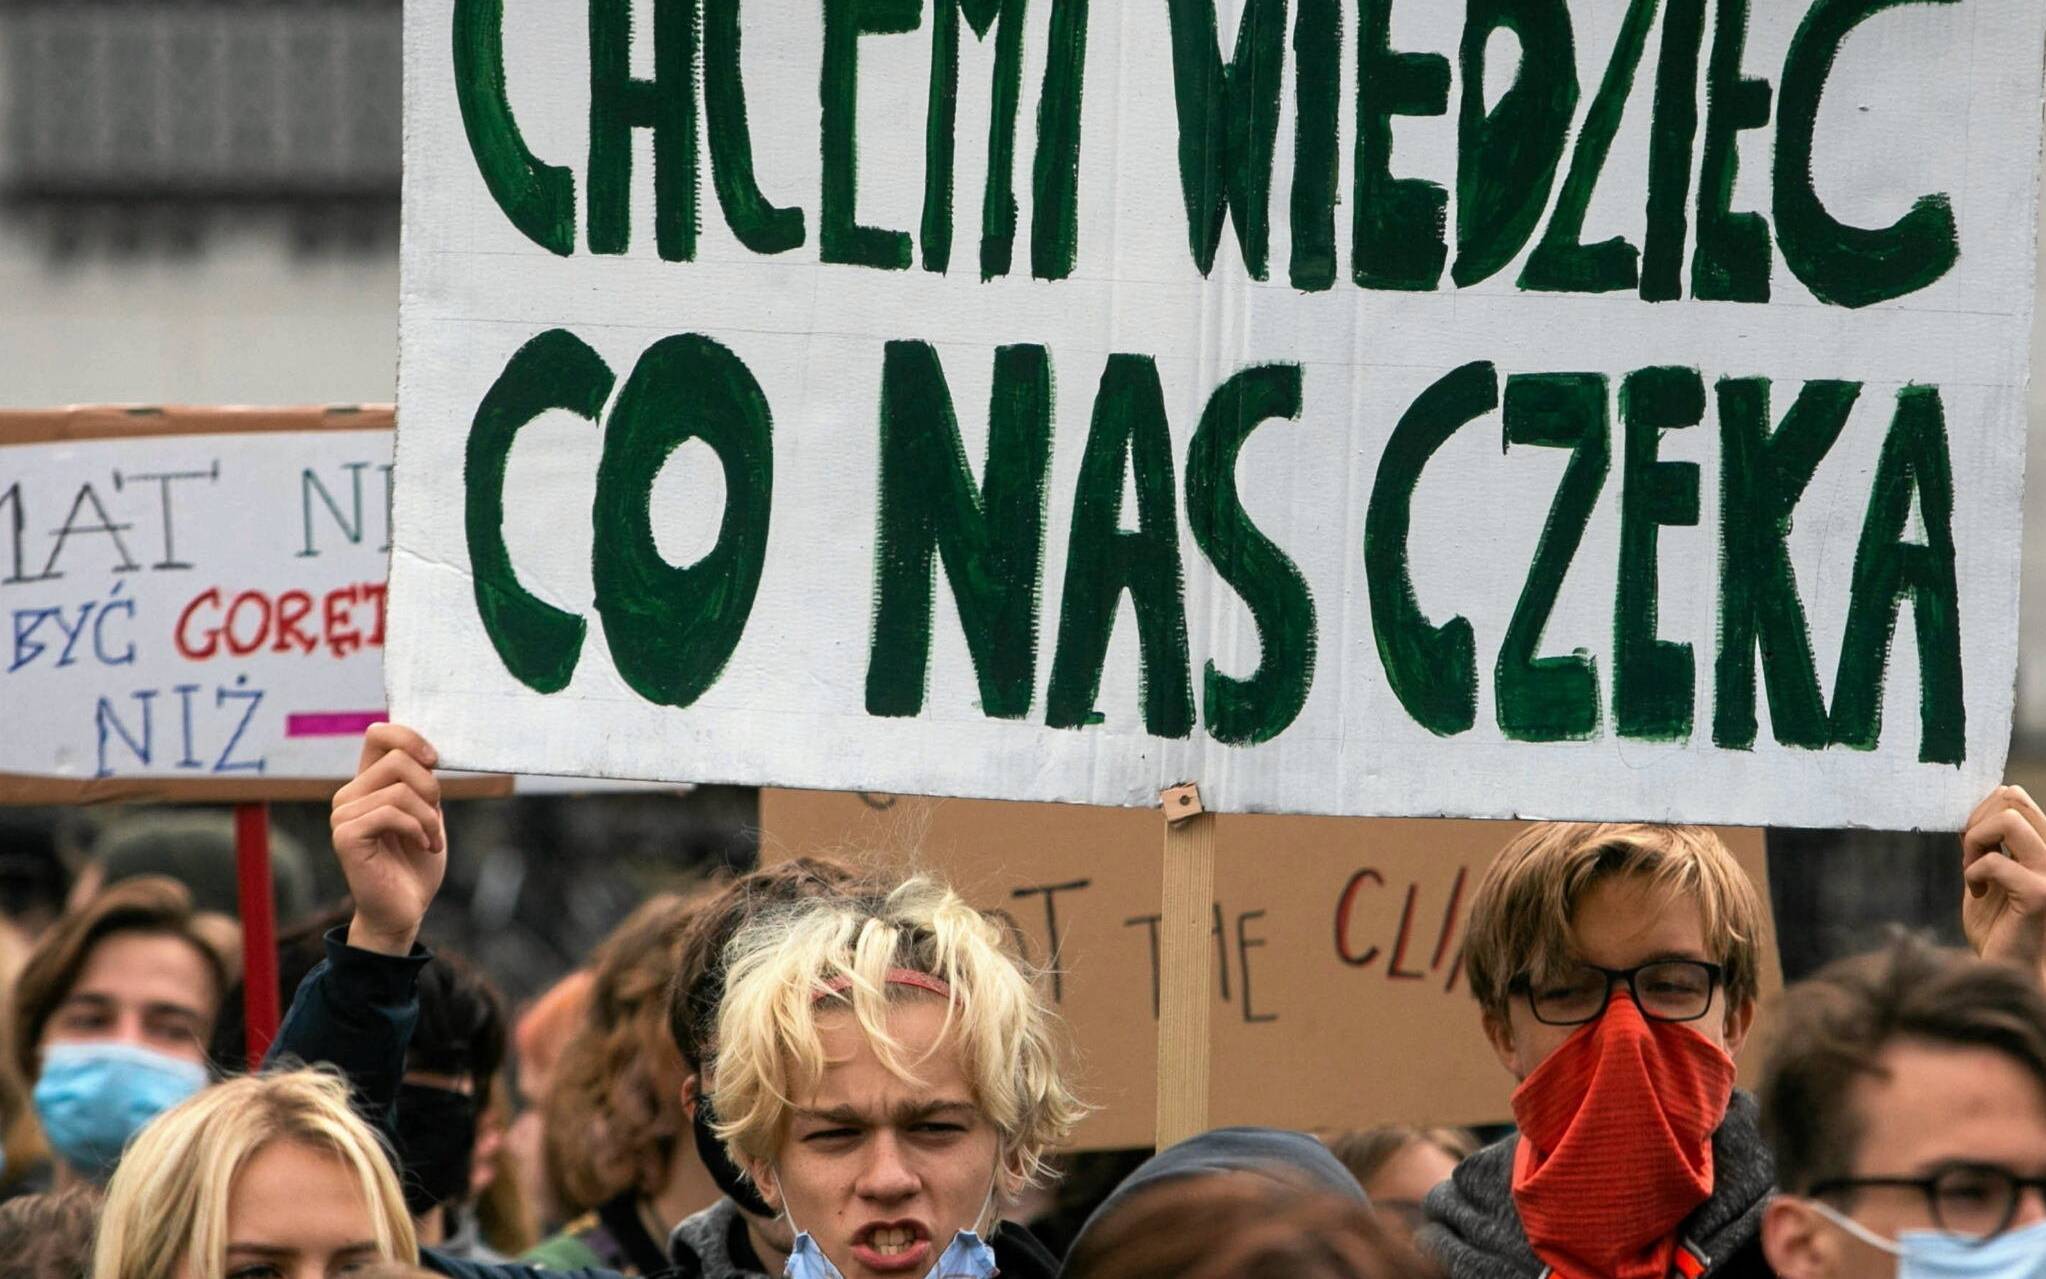 24.09.2021 Krakow . Mlodziezowy Strajk Klimatyczny .
Fot. Adrianna Bochenek/Agencja Gazeta